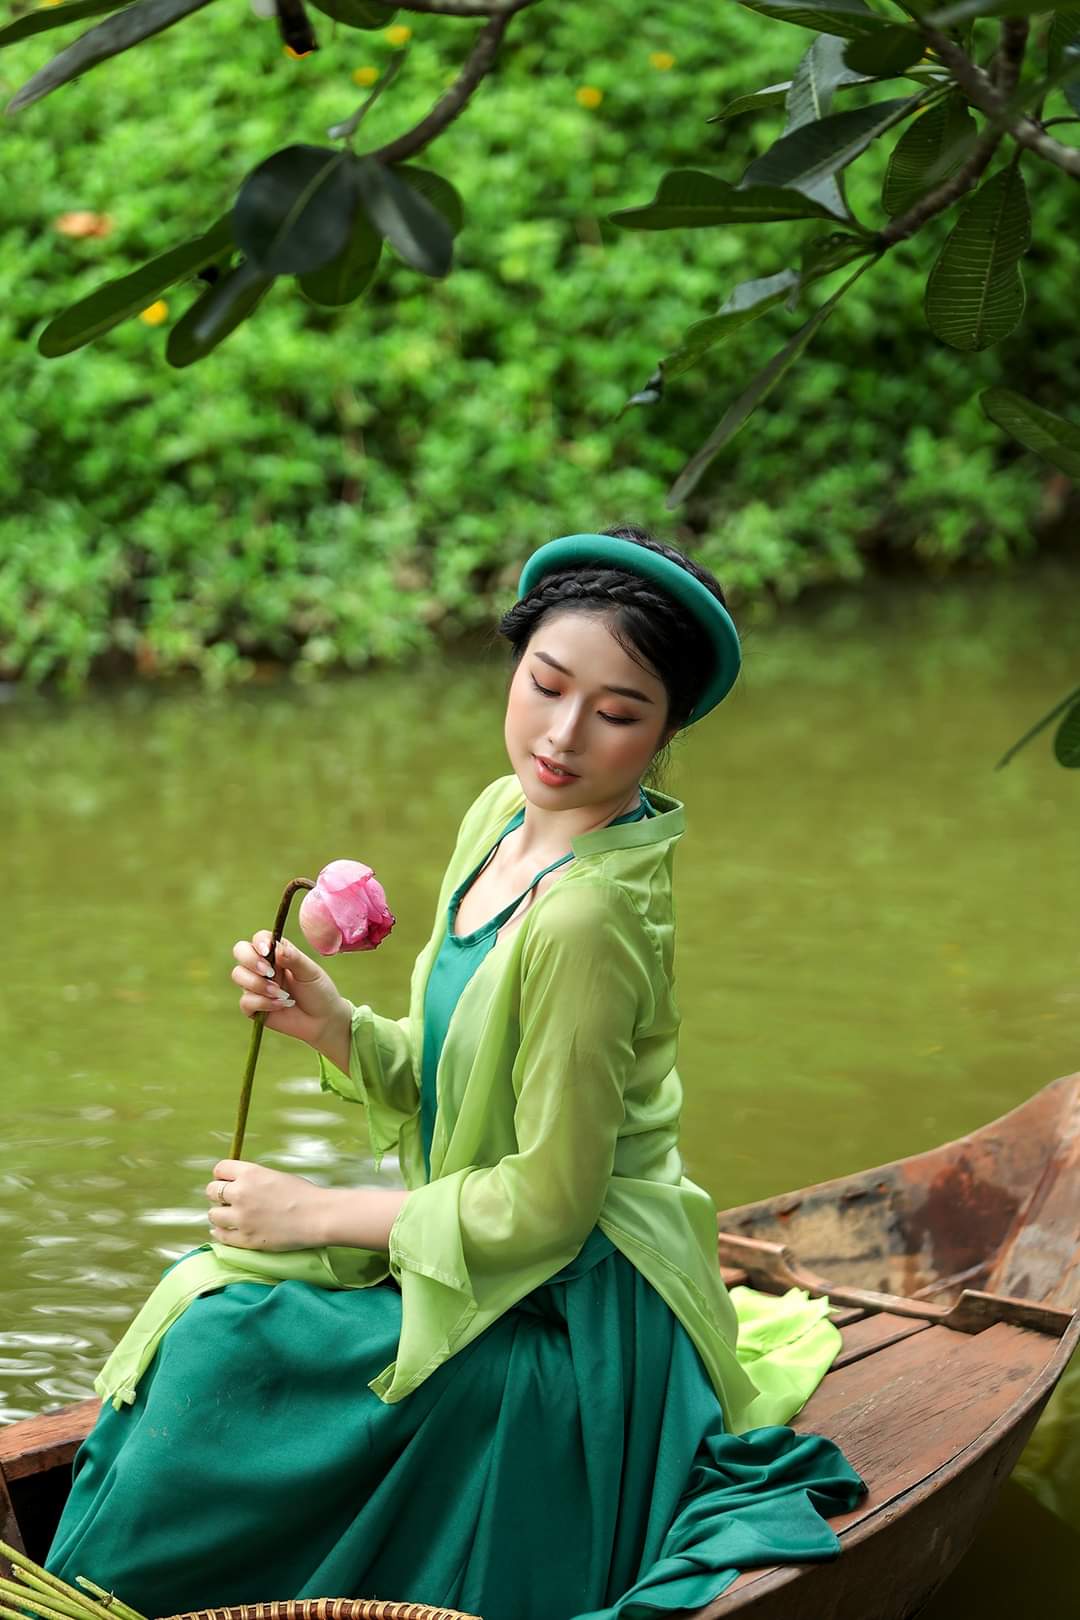 Vietnamese women in the past